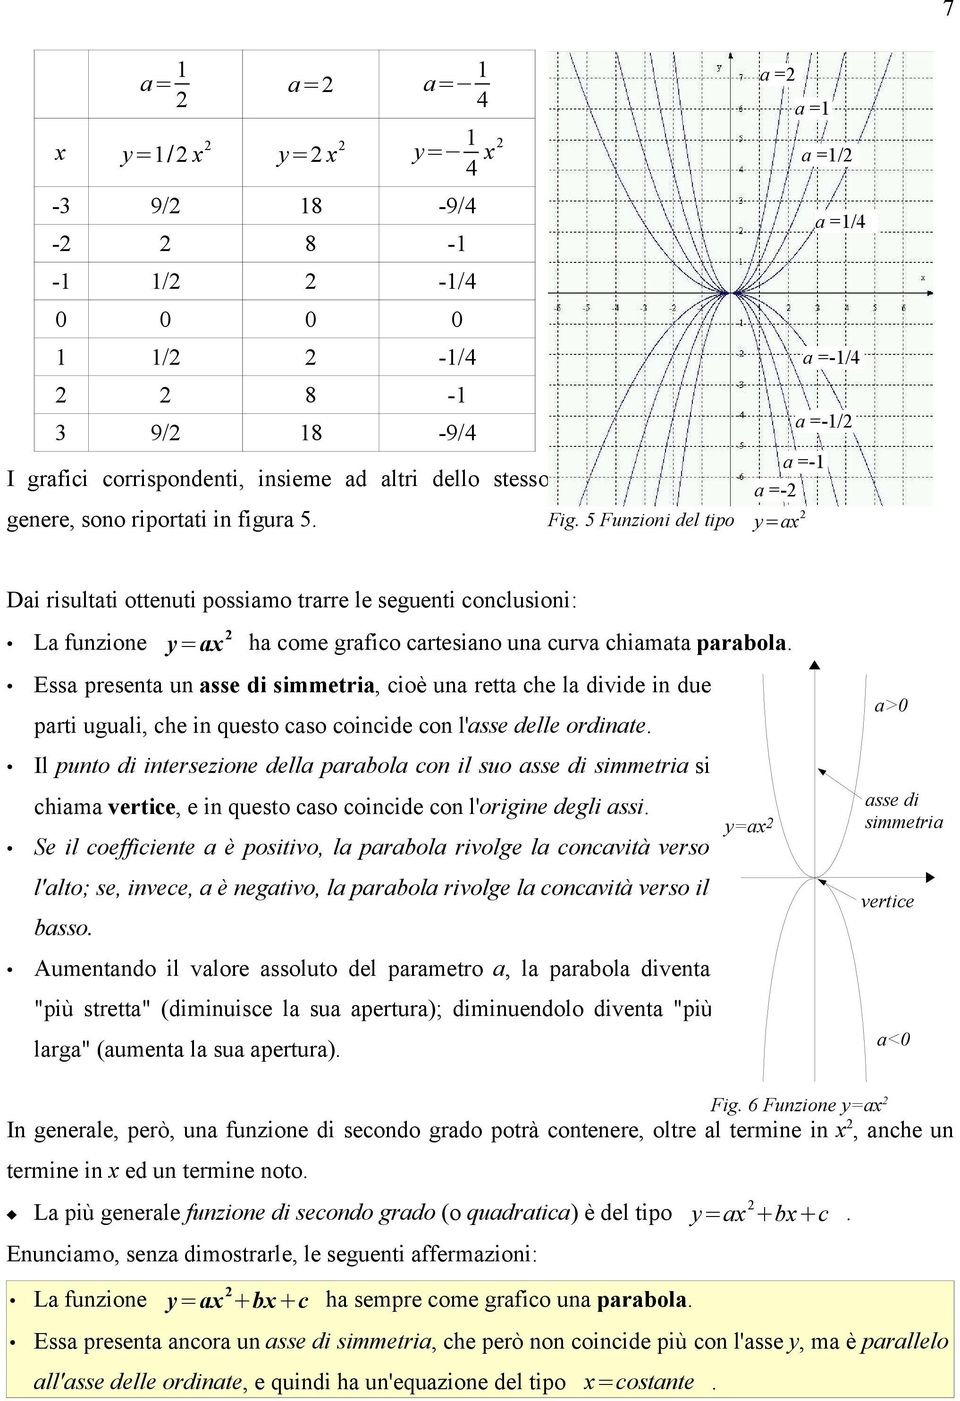 5 Funzioni del tipo y=ax a =1/4 a =-1/4 a =-1/ Dai risultati ottenuti possiamo trarre le seguenti conclusioni: La funzione y=ax ha come grafico cartesiano una curva chiamata parabola.